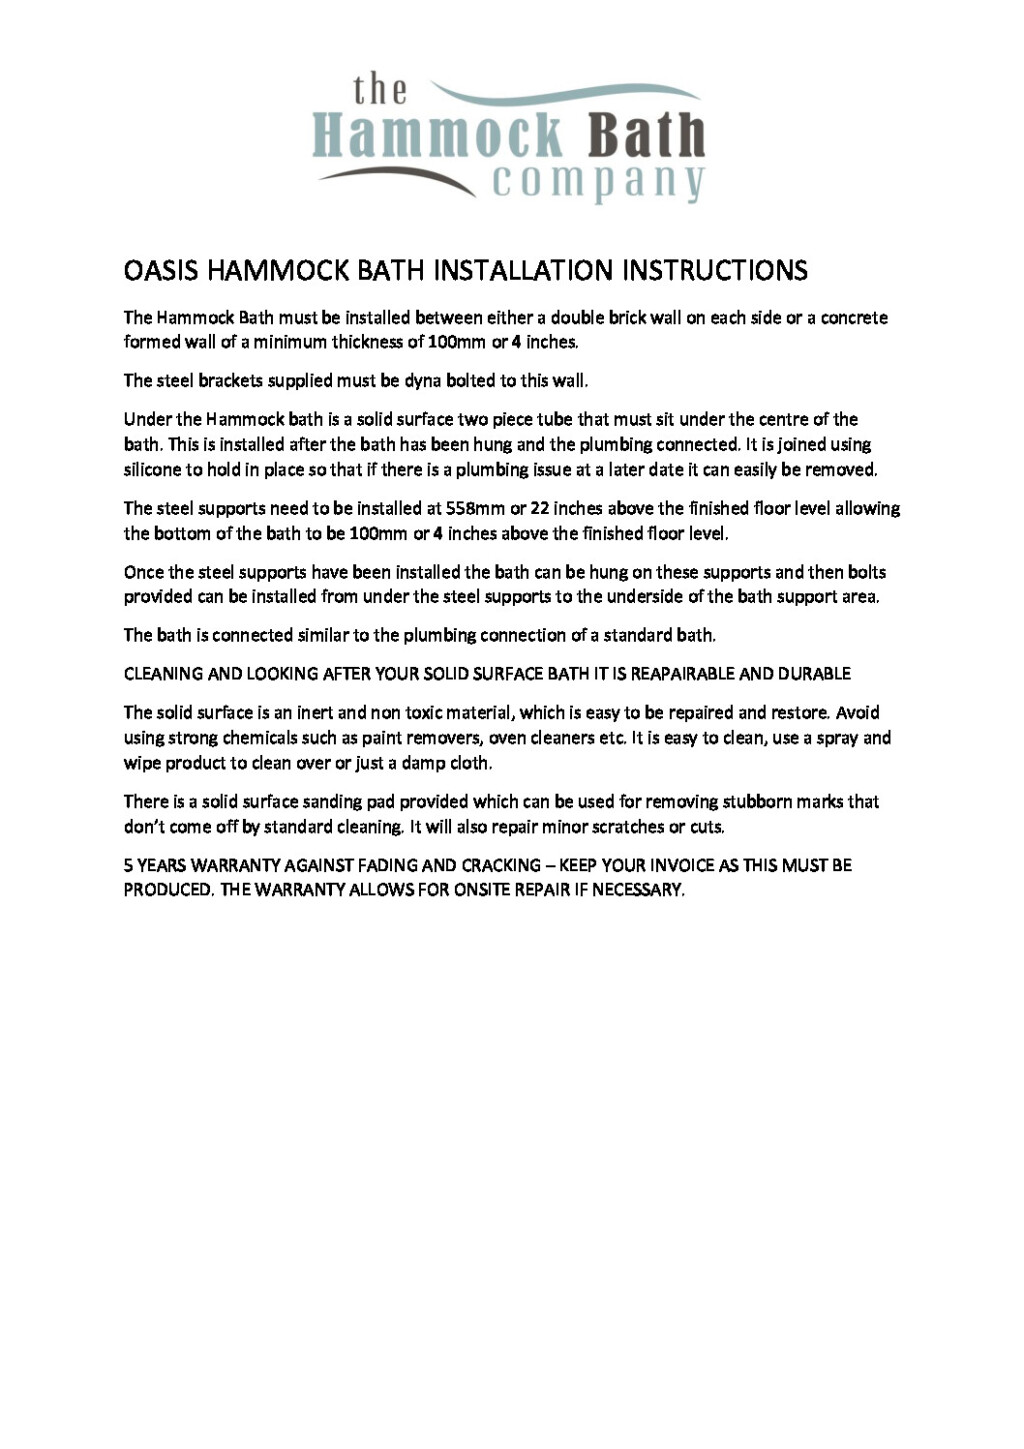 HAMMOCK BATH INSTALLATION INSTRUCTIONS V2 pdf